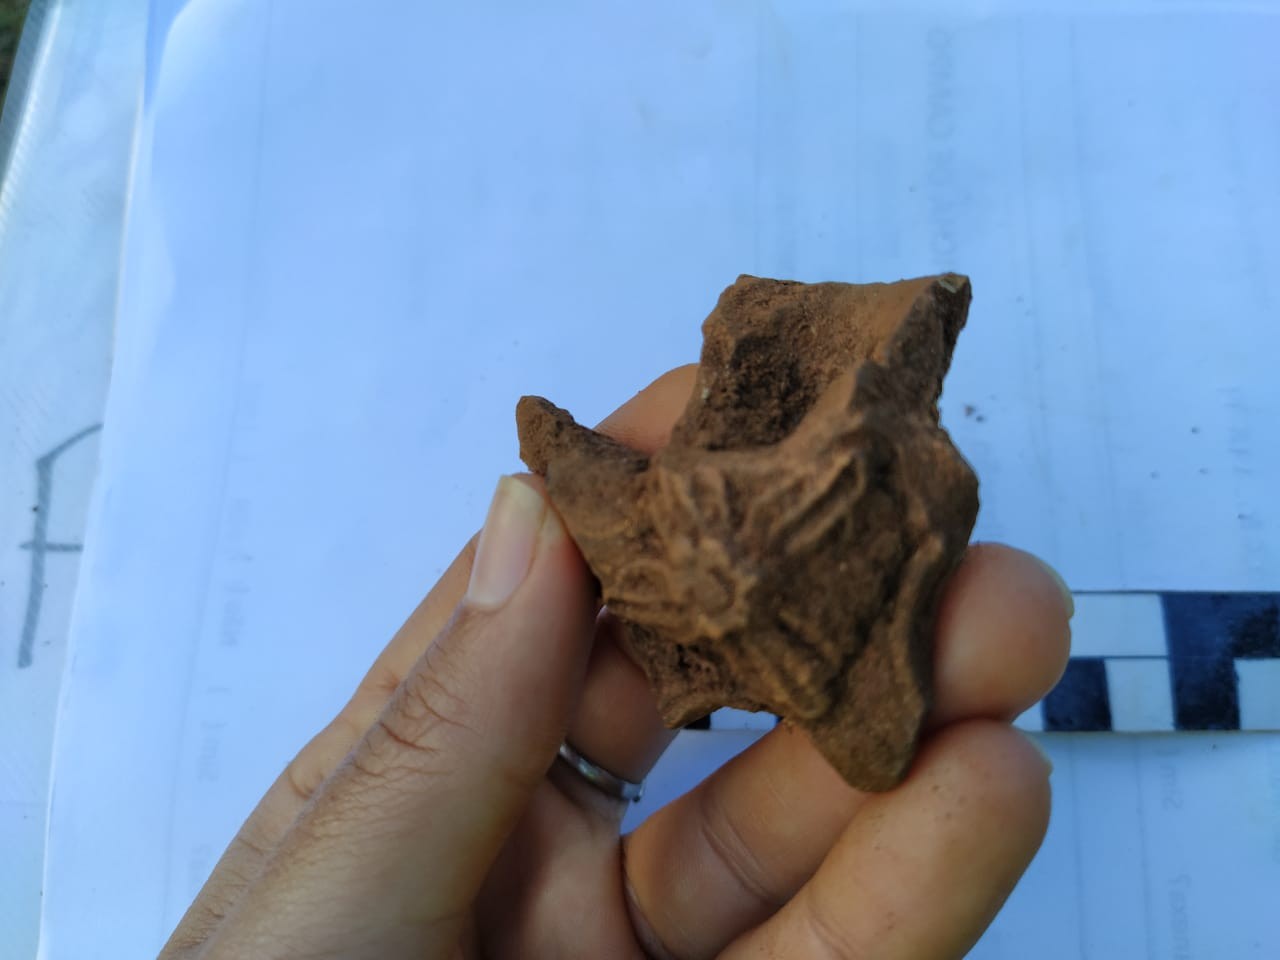 Cachimbo de cerâmica está entre os artefatos descobertos em Mariana (MG) (Foto: Fundação Renova/Divulgação)